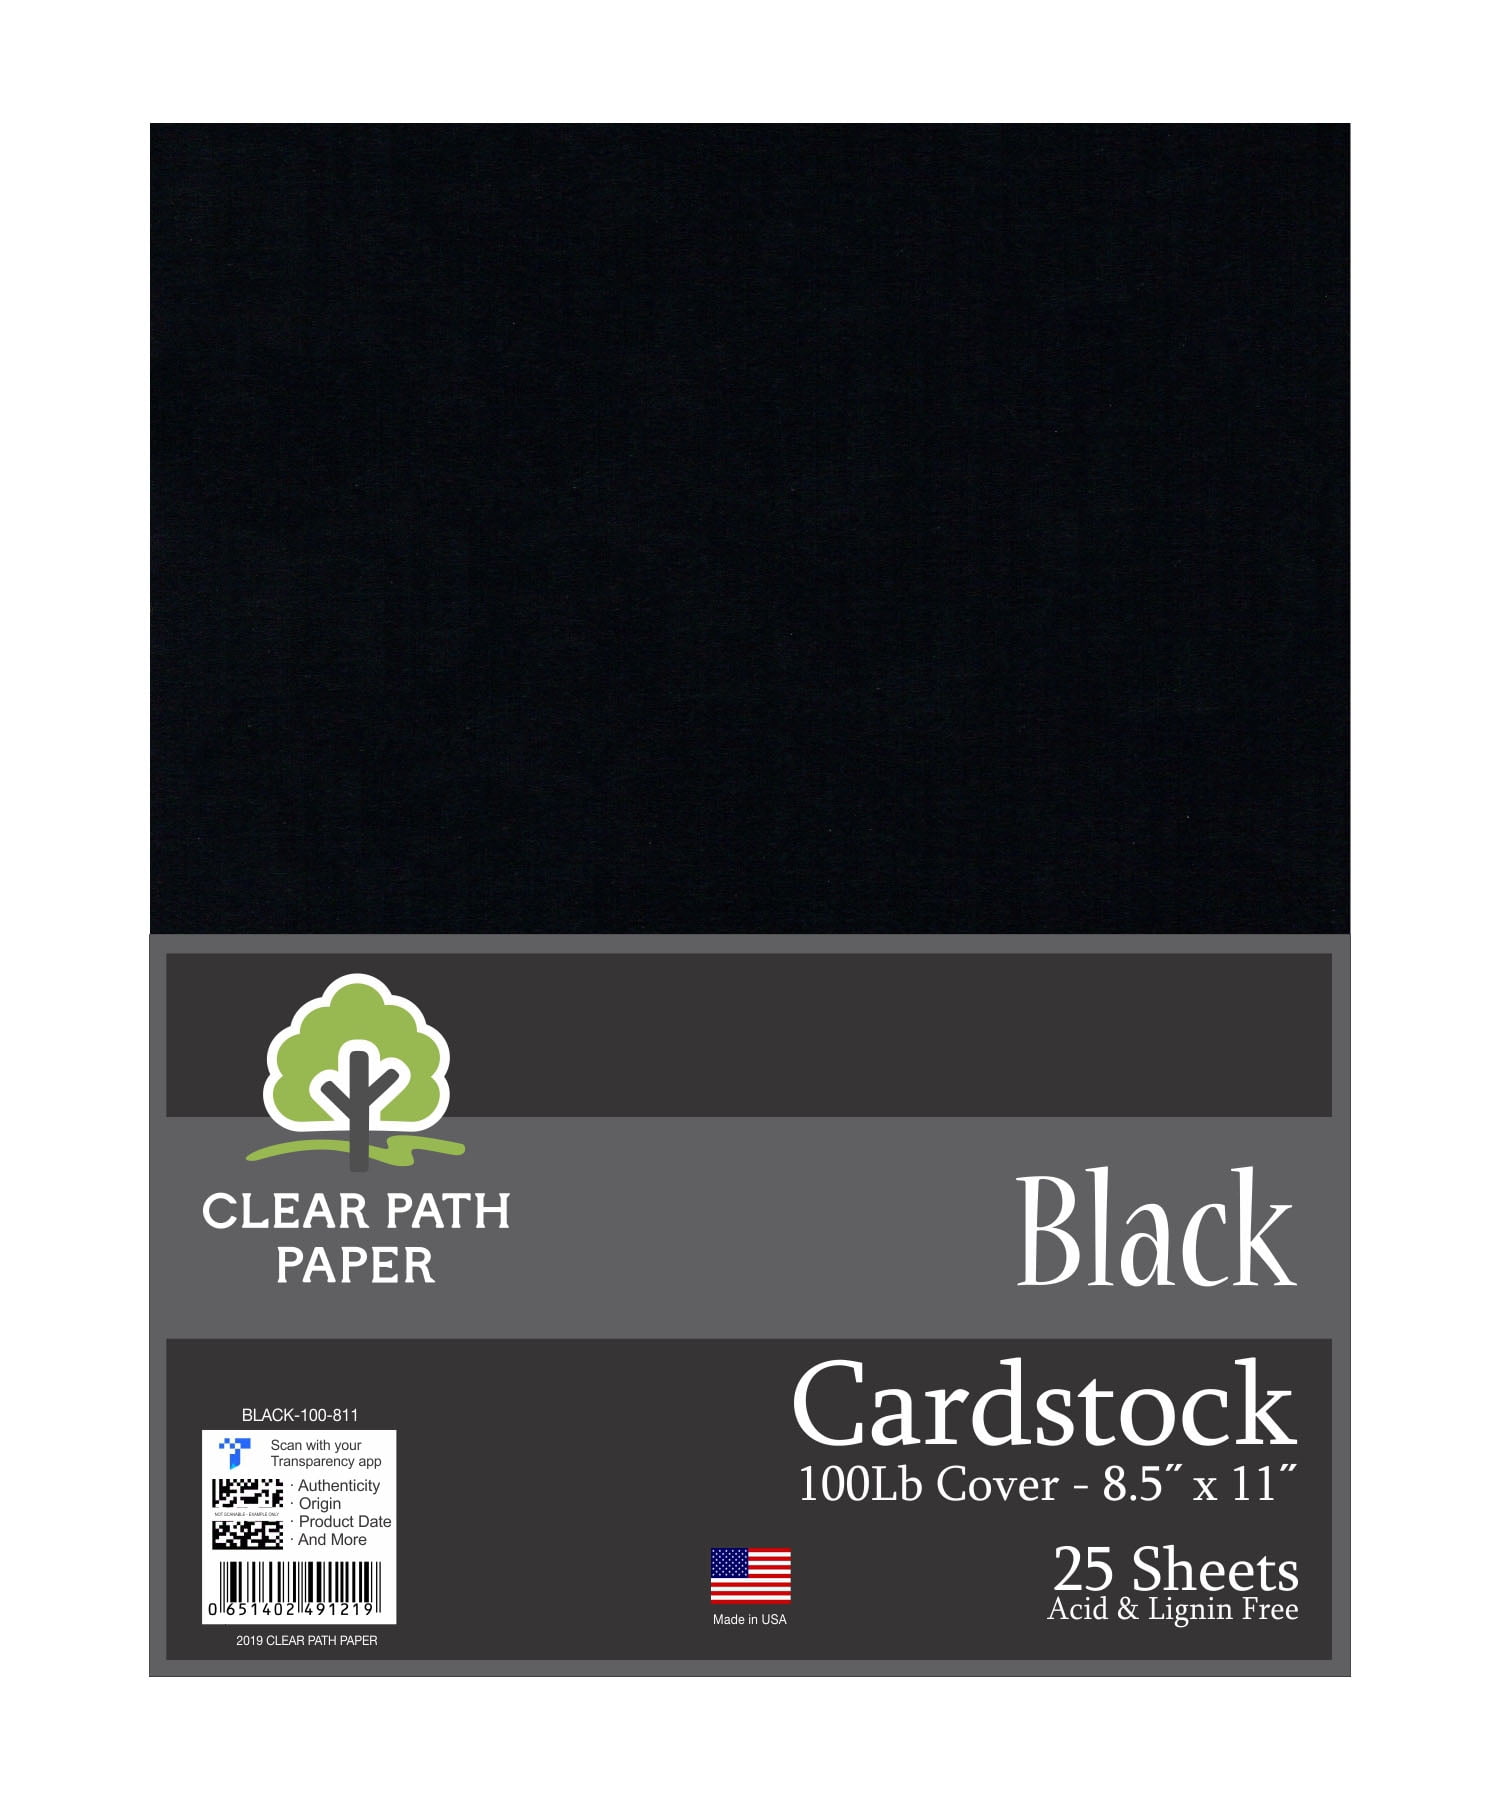 Black Cardstock - 8.5 x 11 inch - 100Lb Cover 